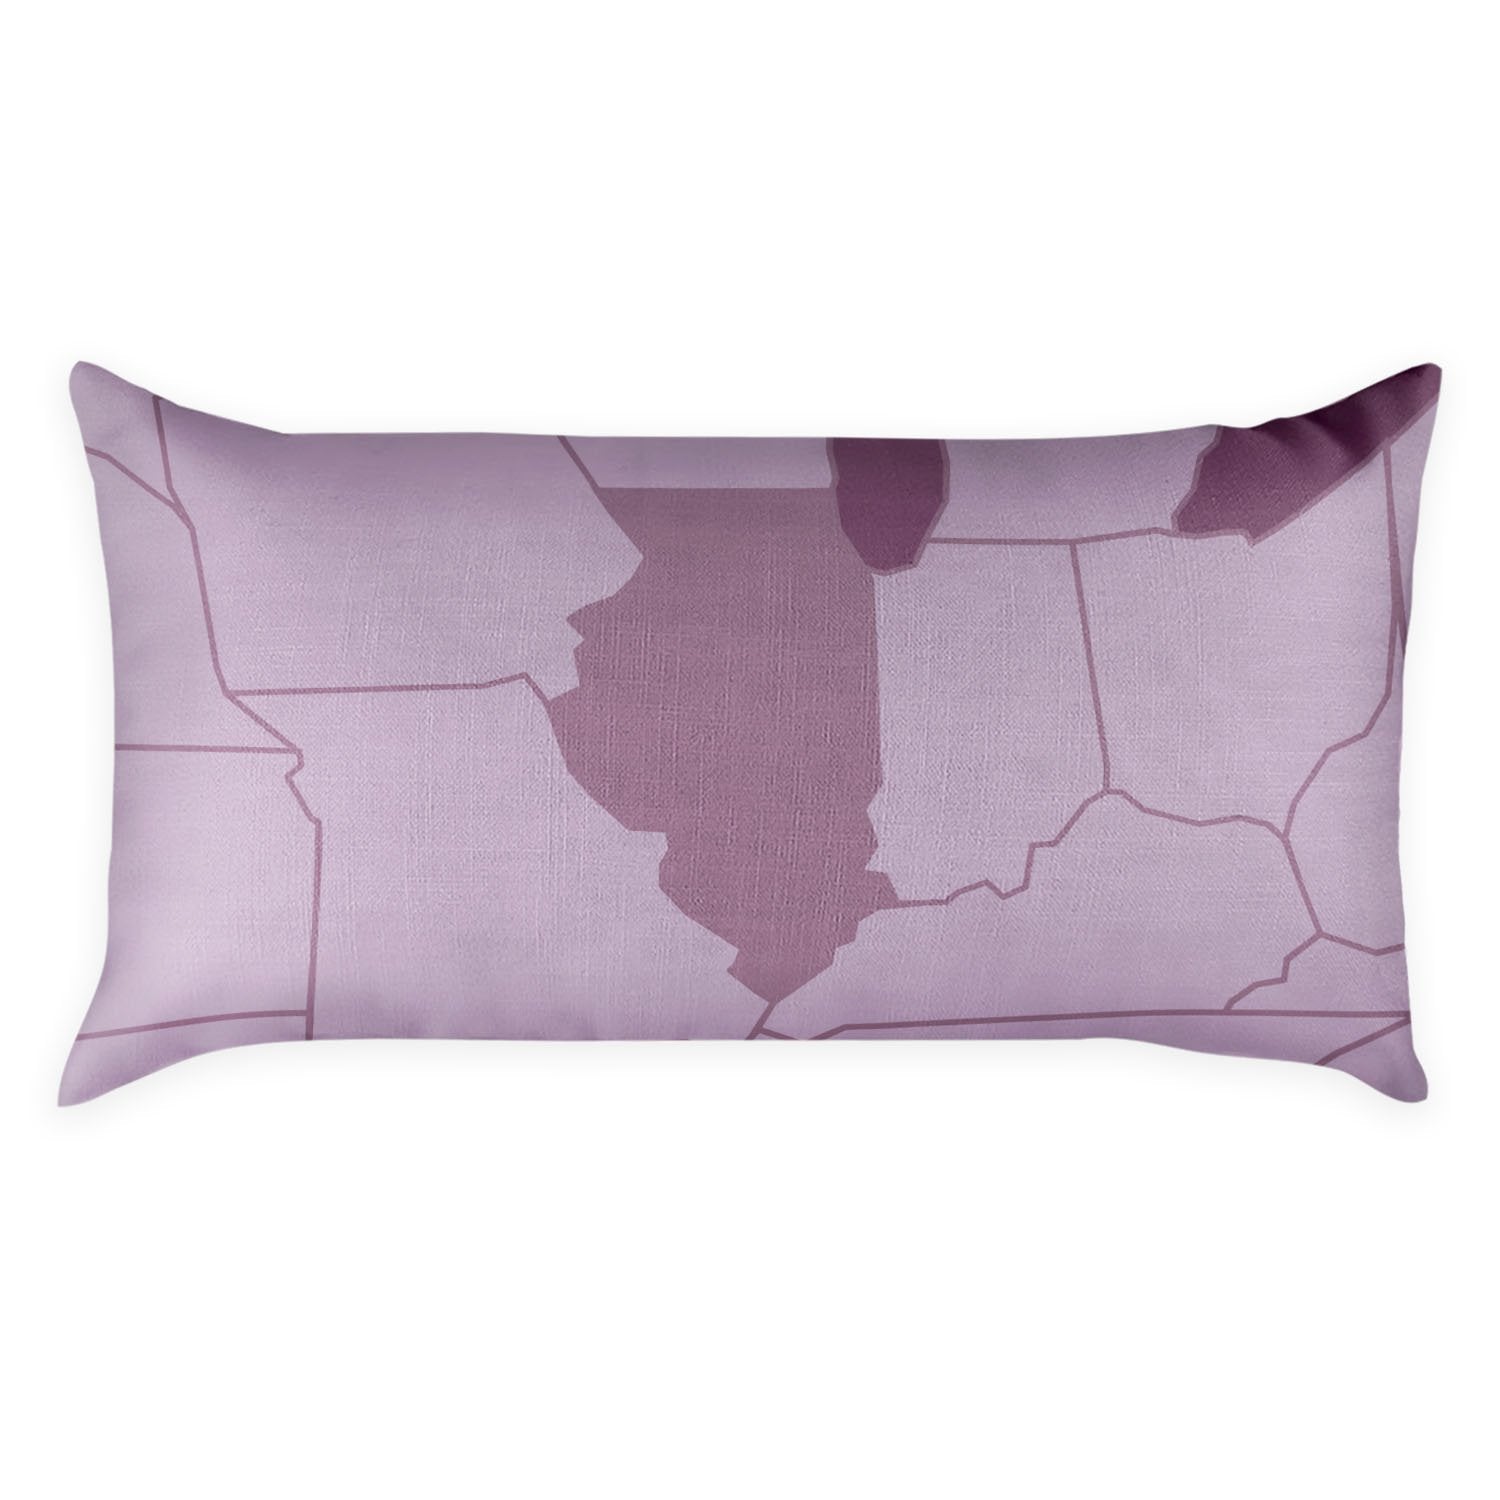 Illinois Lumbar Pillow - Linen -  - Knotty Tie Co.